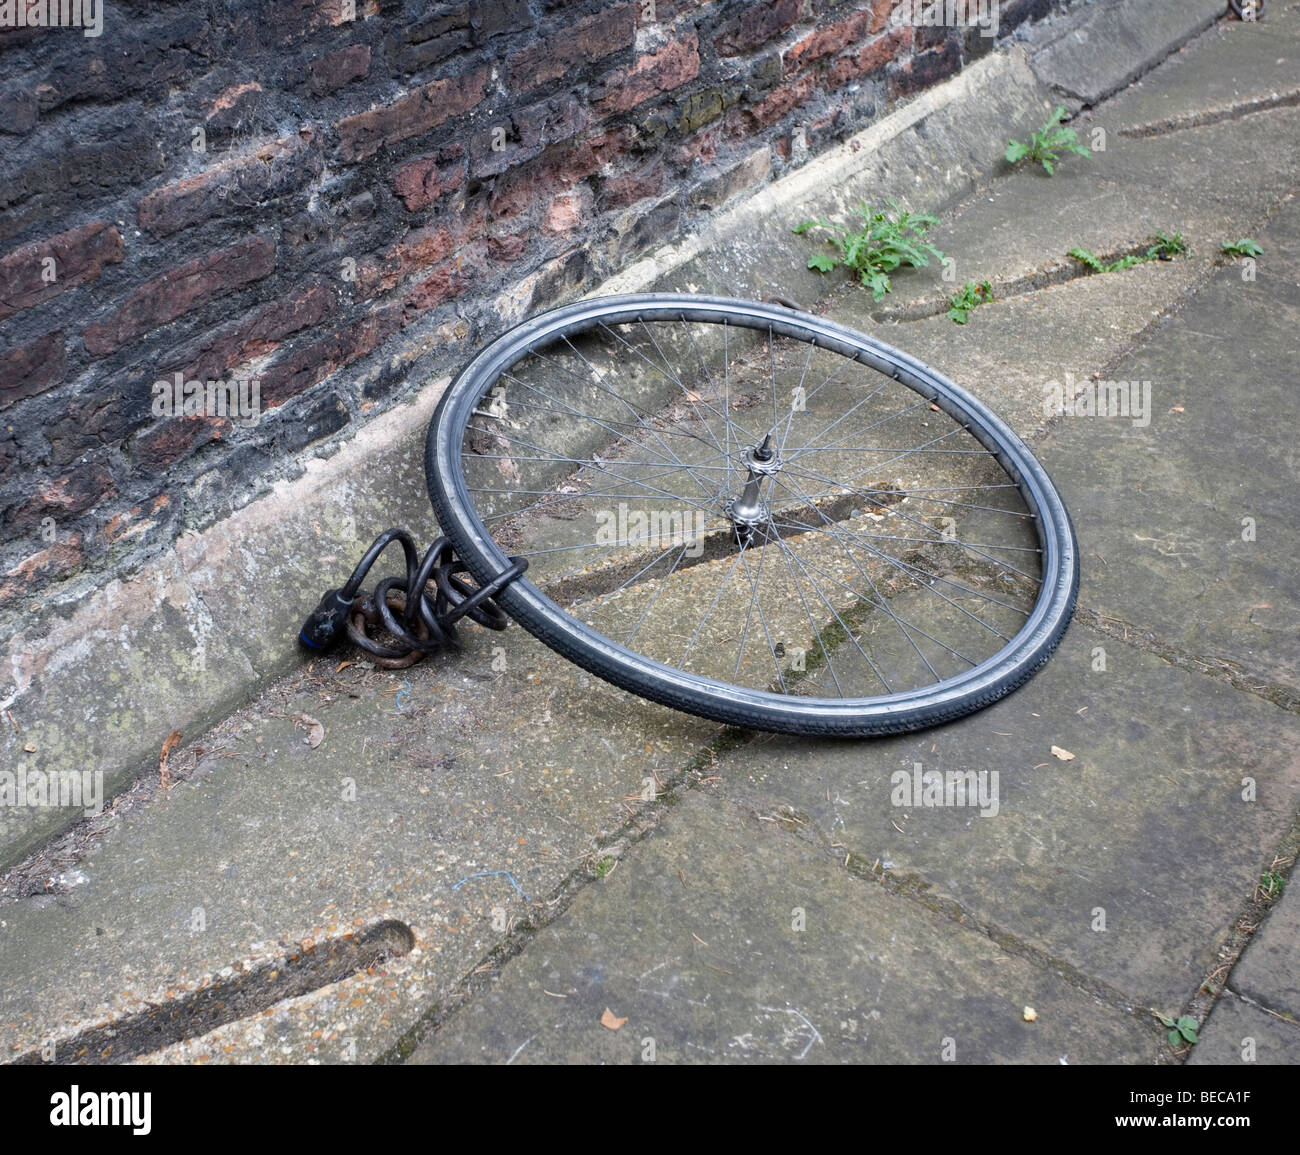 Ein Fahrrad-Rad und Schloss, war der Rest des Motorrades gestohlen, Cambridge, Cambridgeshire, Großbritannien. Stockfoto